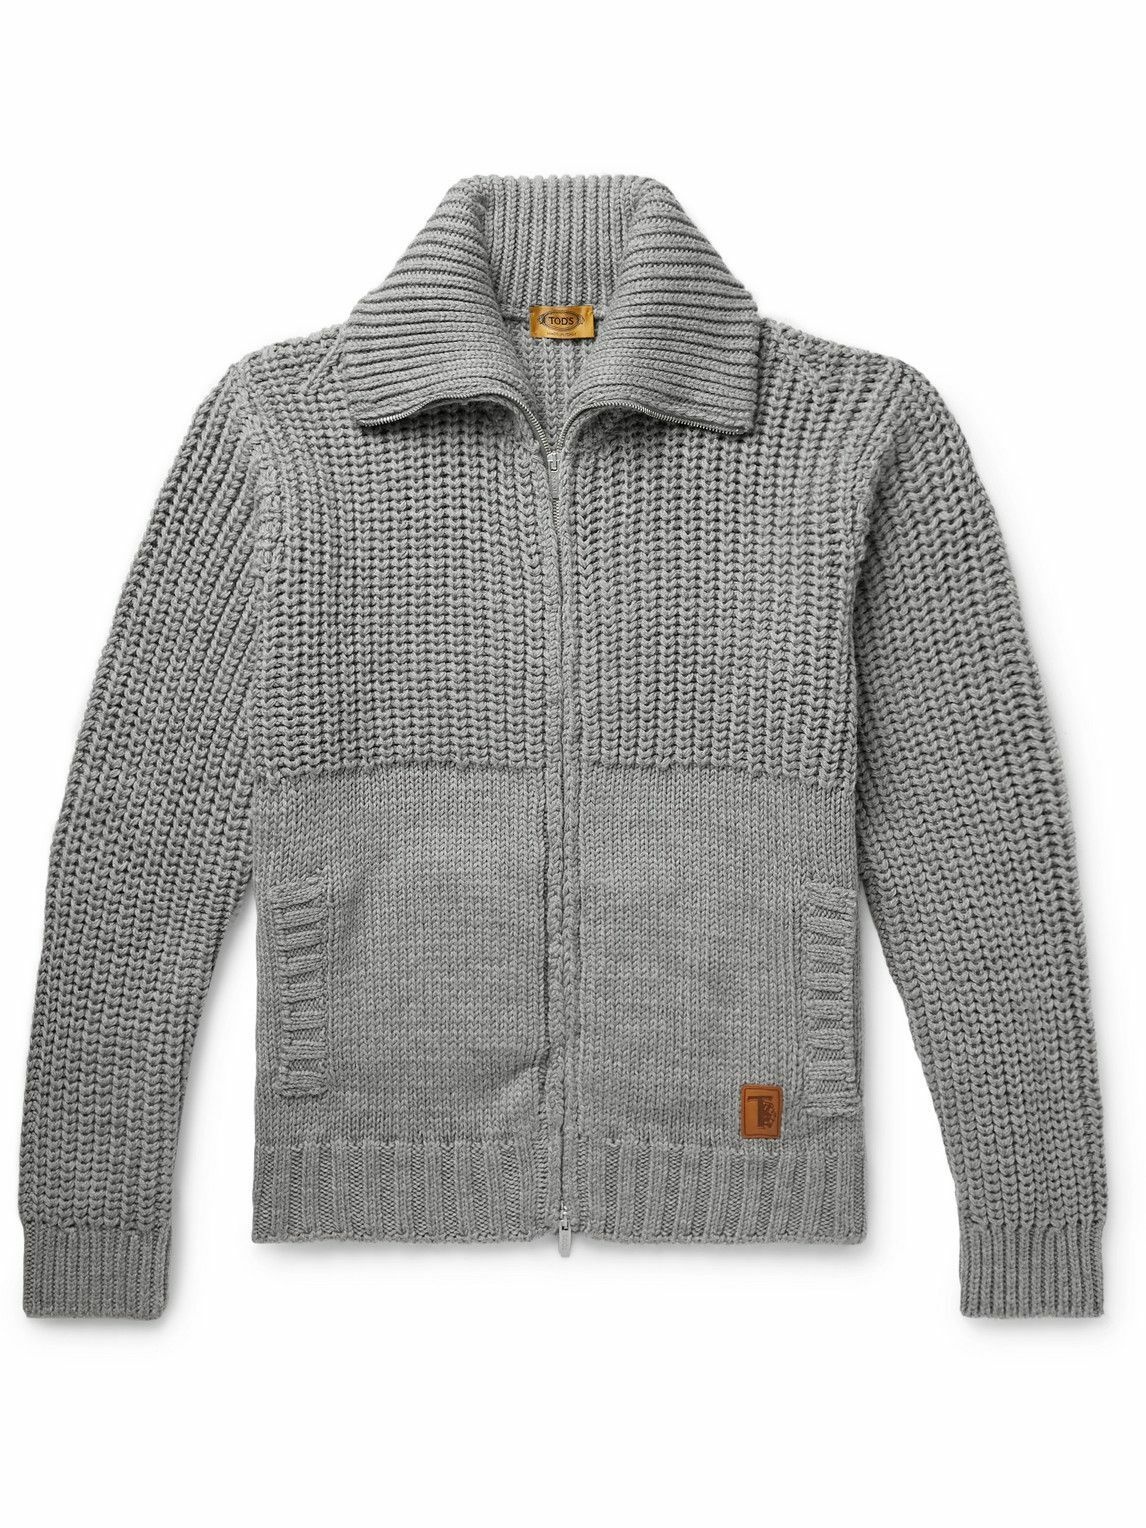 Photo: Tod's - Ribbed Merino Wool Zip-Up Sweater - Gray